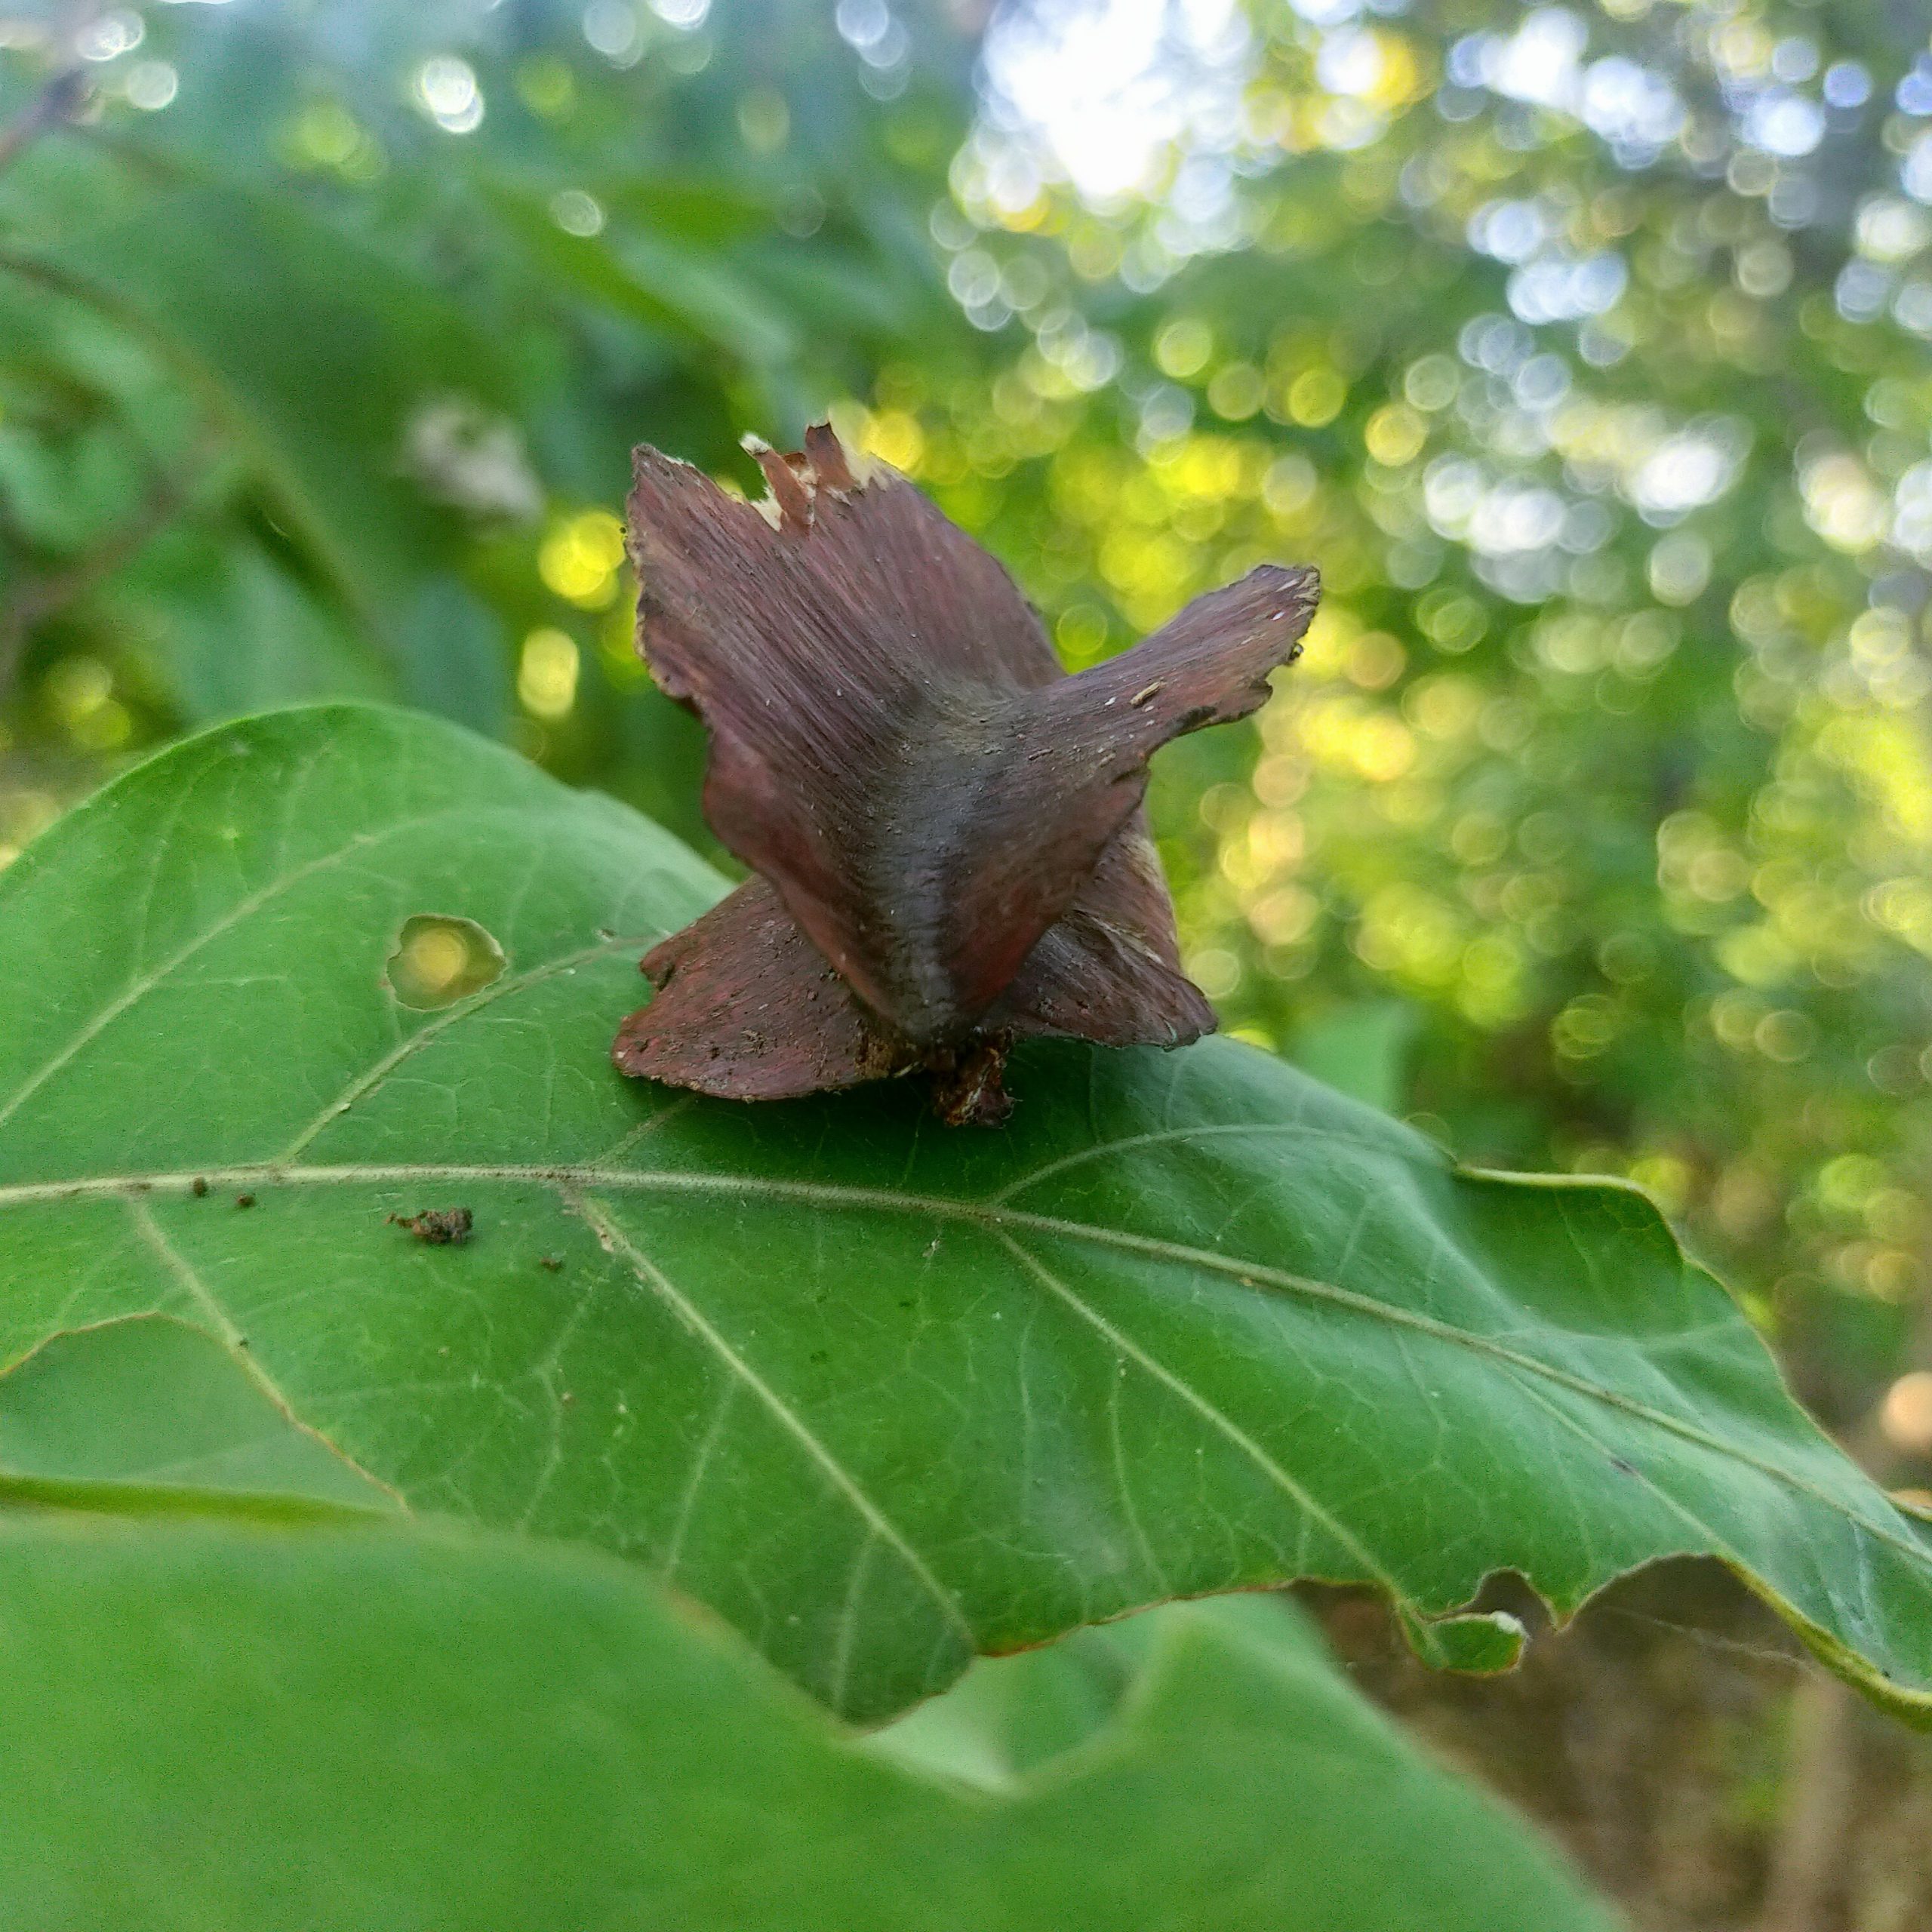 Seed on leaf